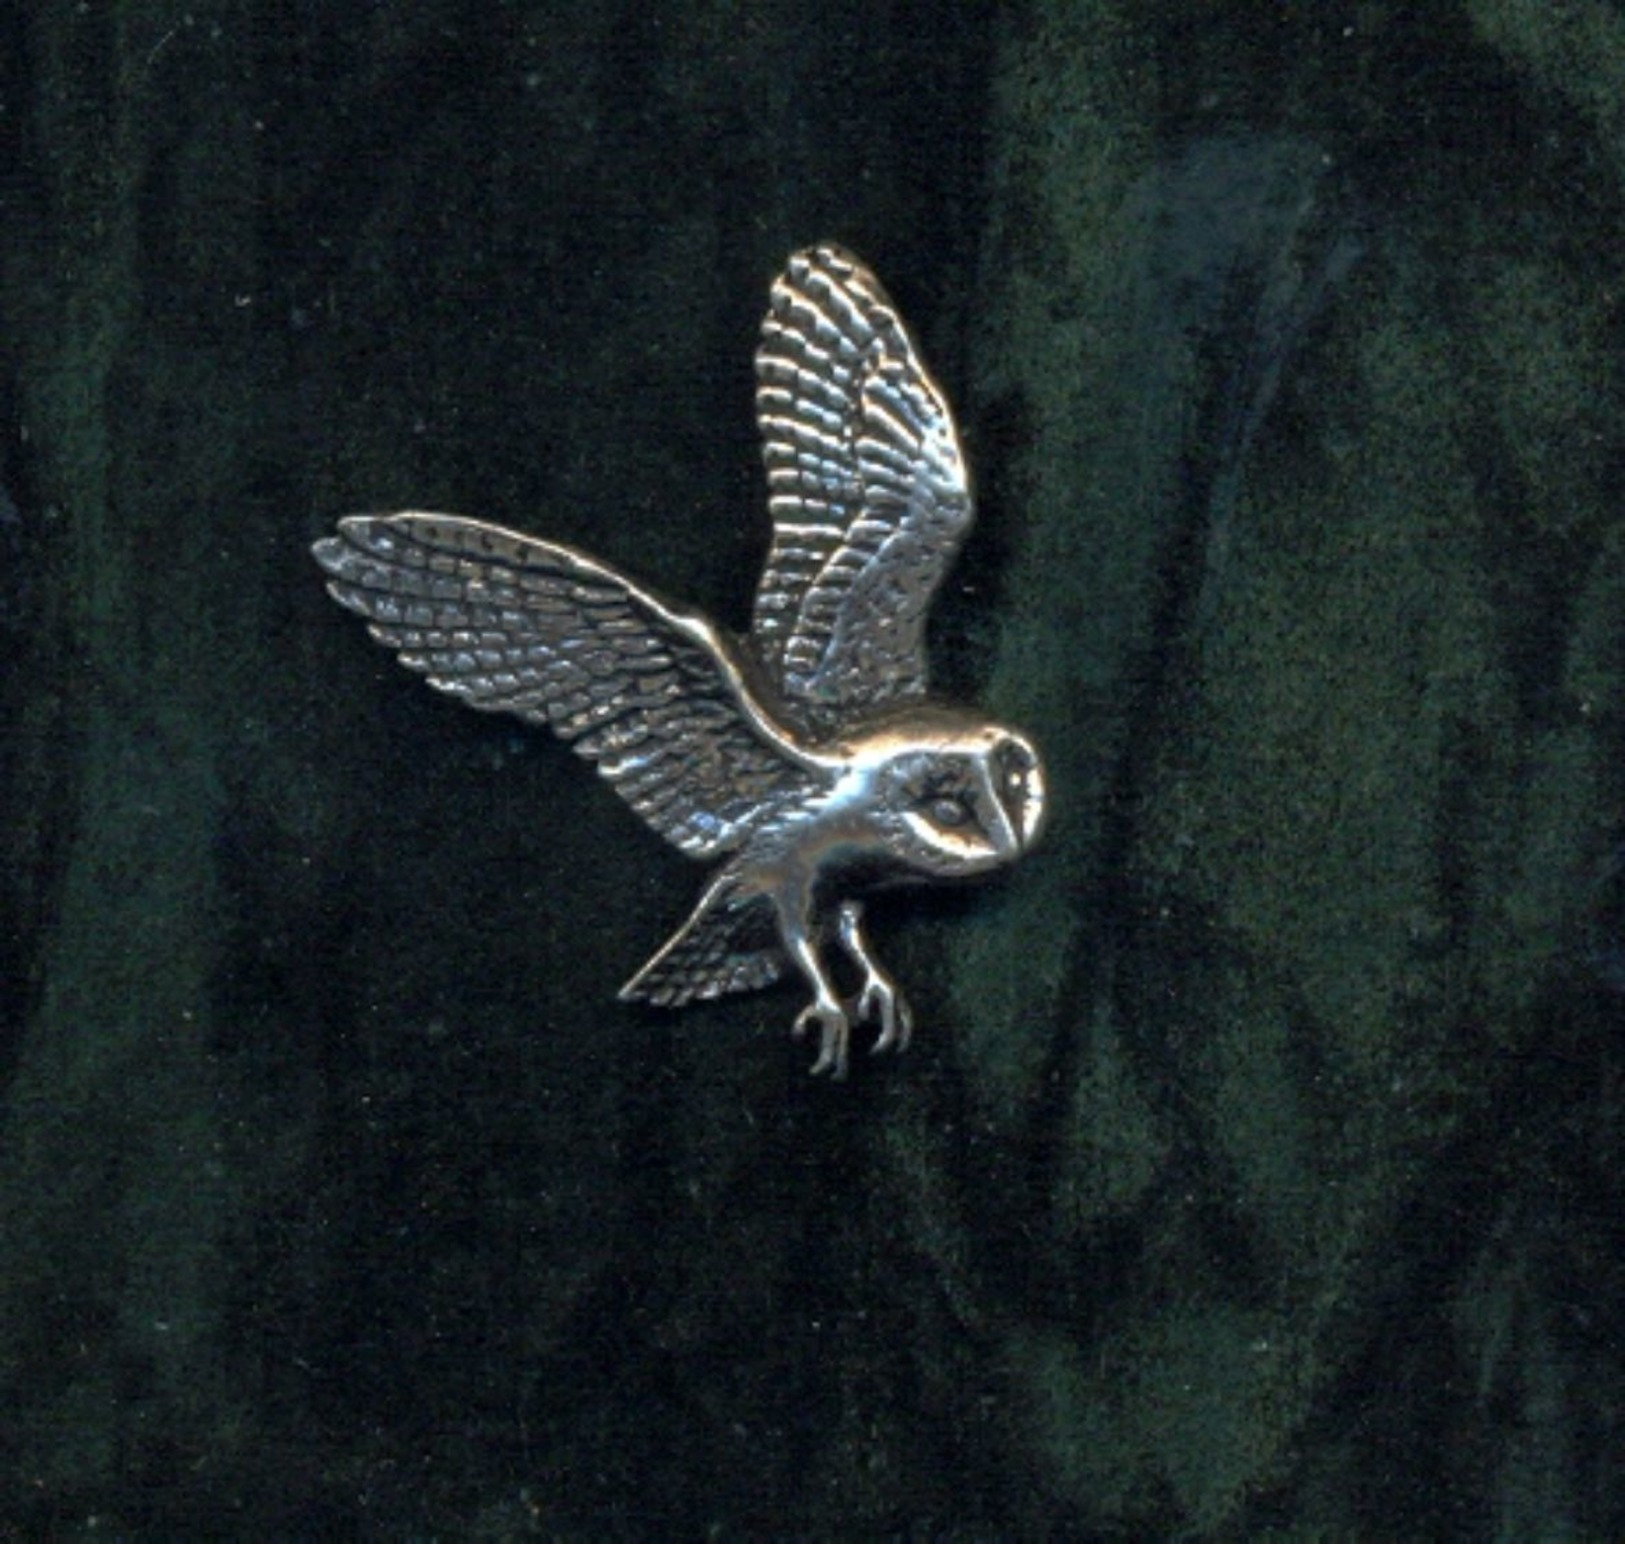 UIL / OWL / HIBOU * BIRD * TINNEN SPELD / PEWTER PIN * REF B19 - Dieren